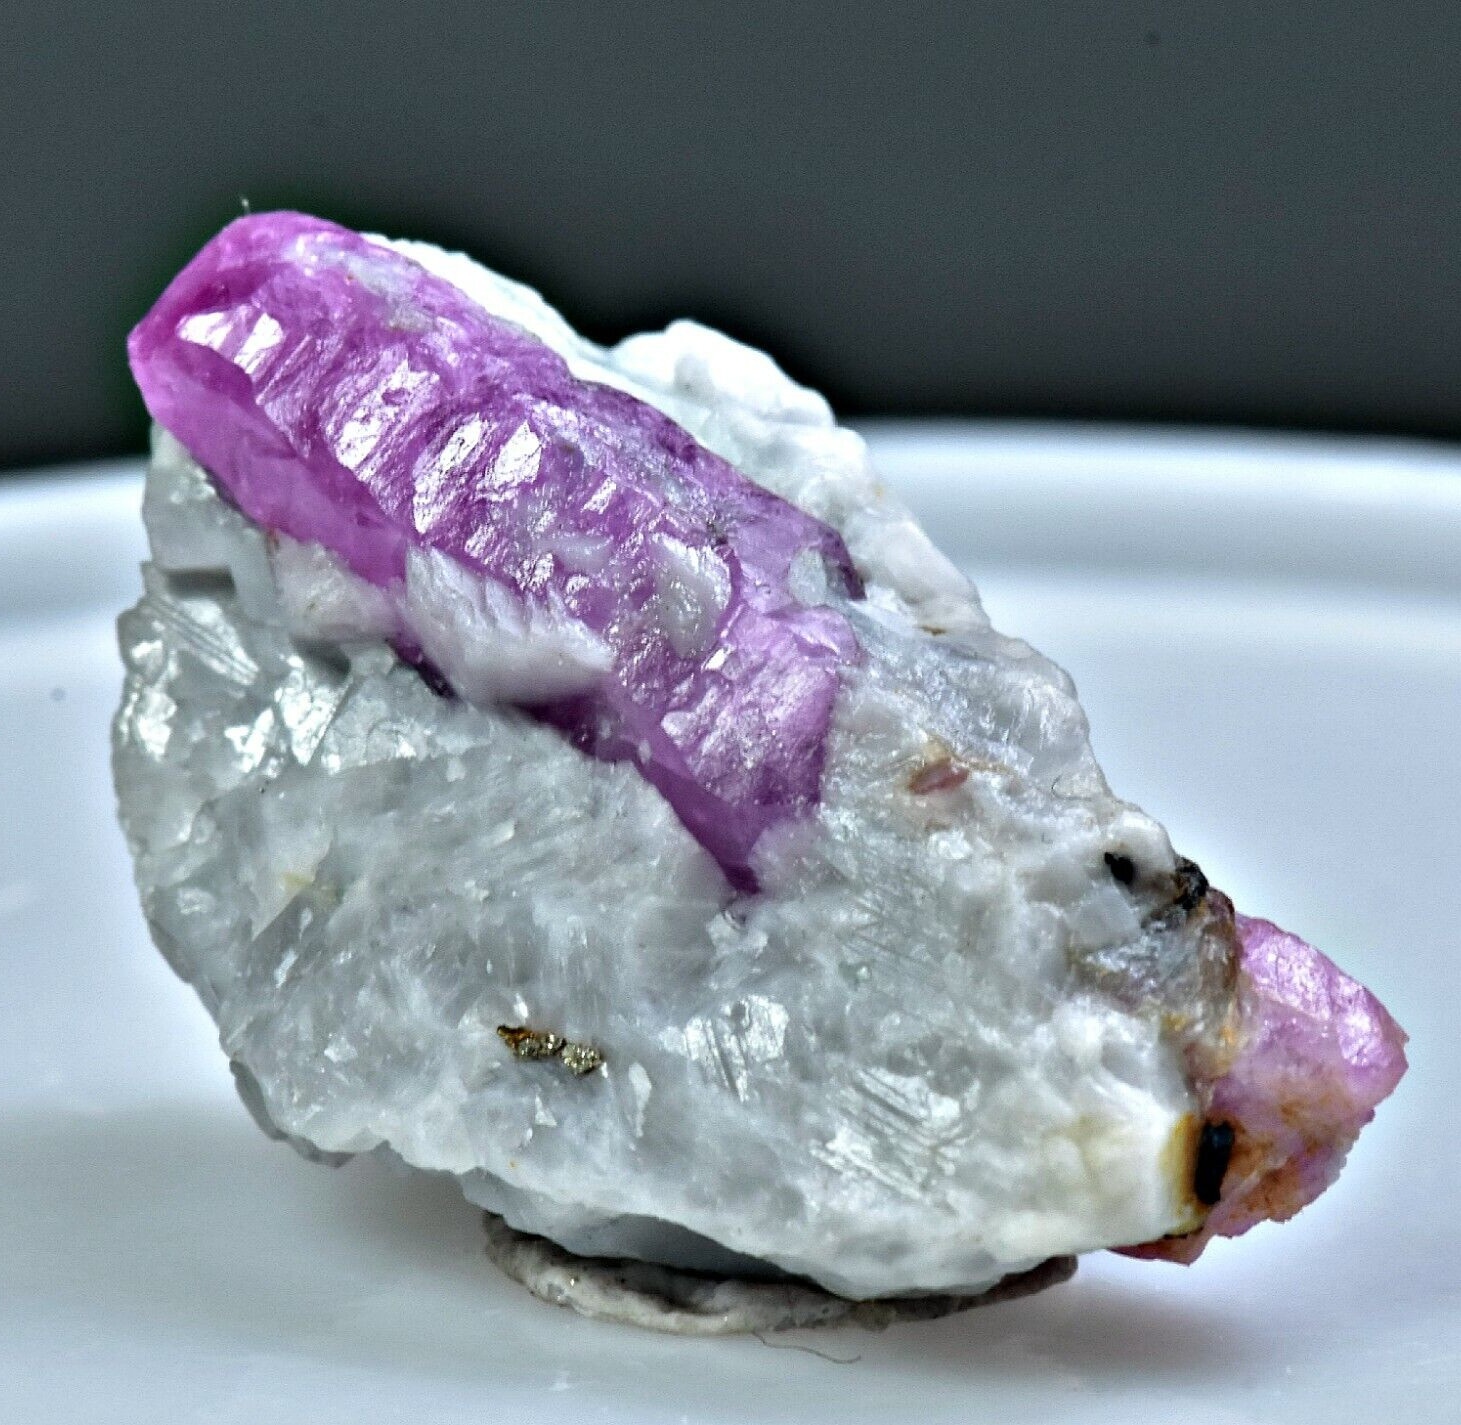 34 Crt Well Terminated Top Huge Ruby Crystal On Calcite Matrix @ Jegdalek Afg